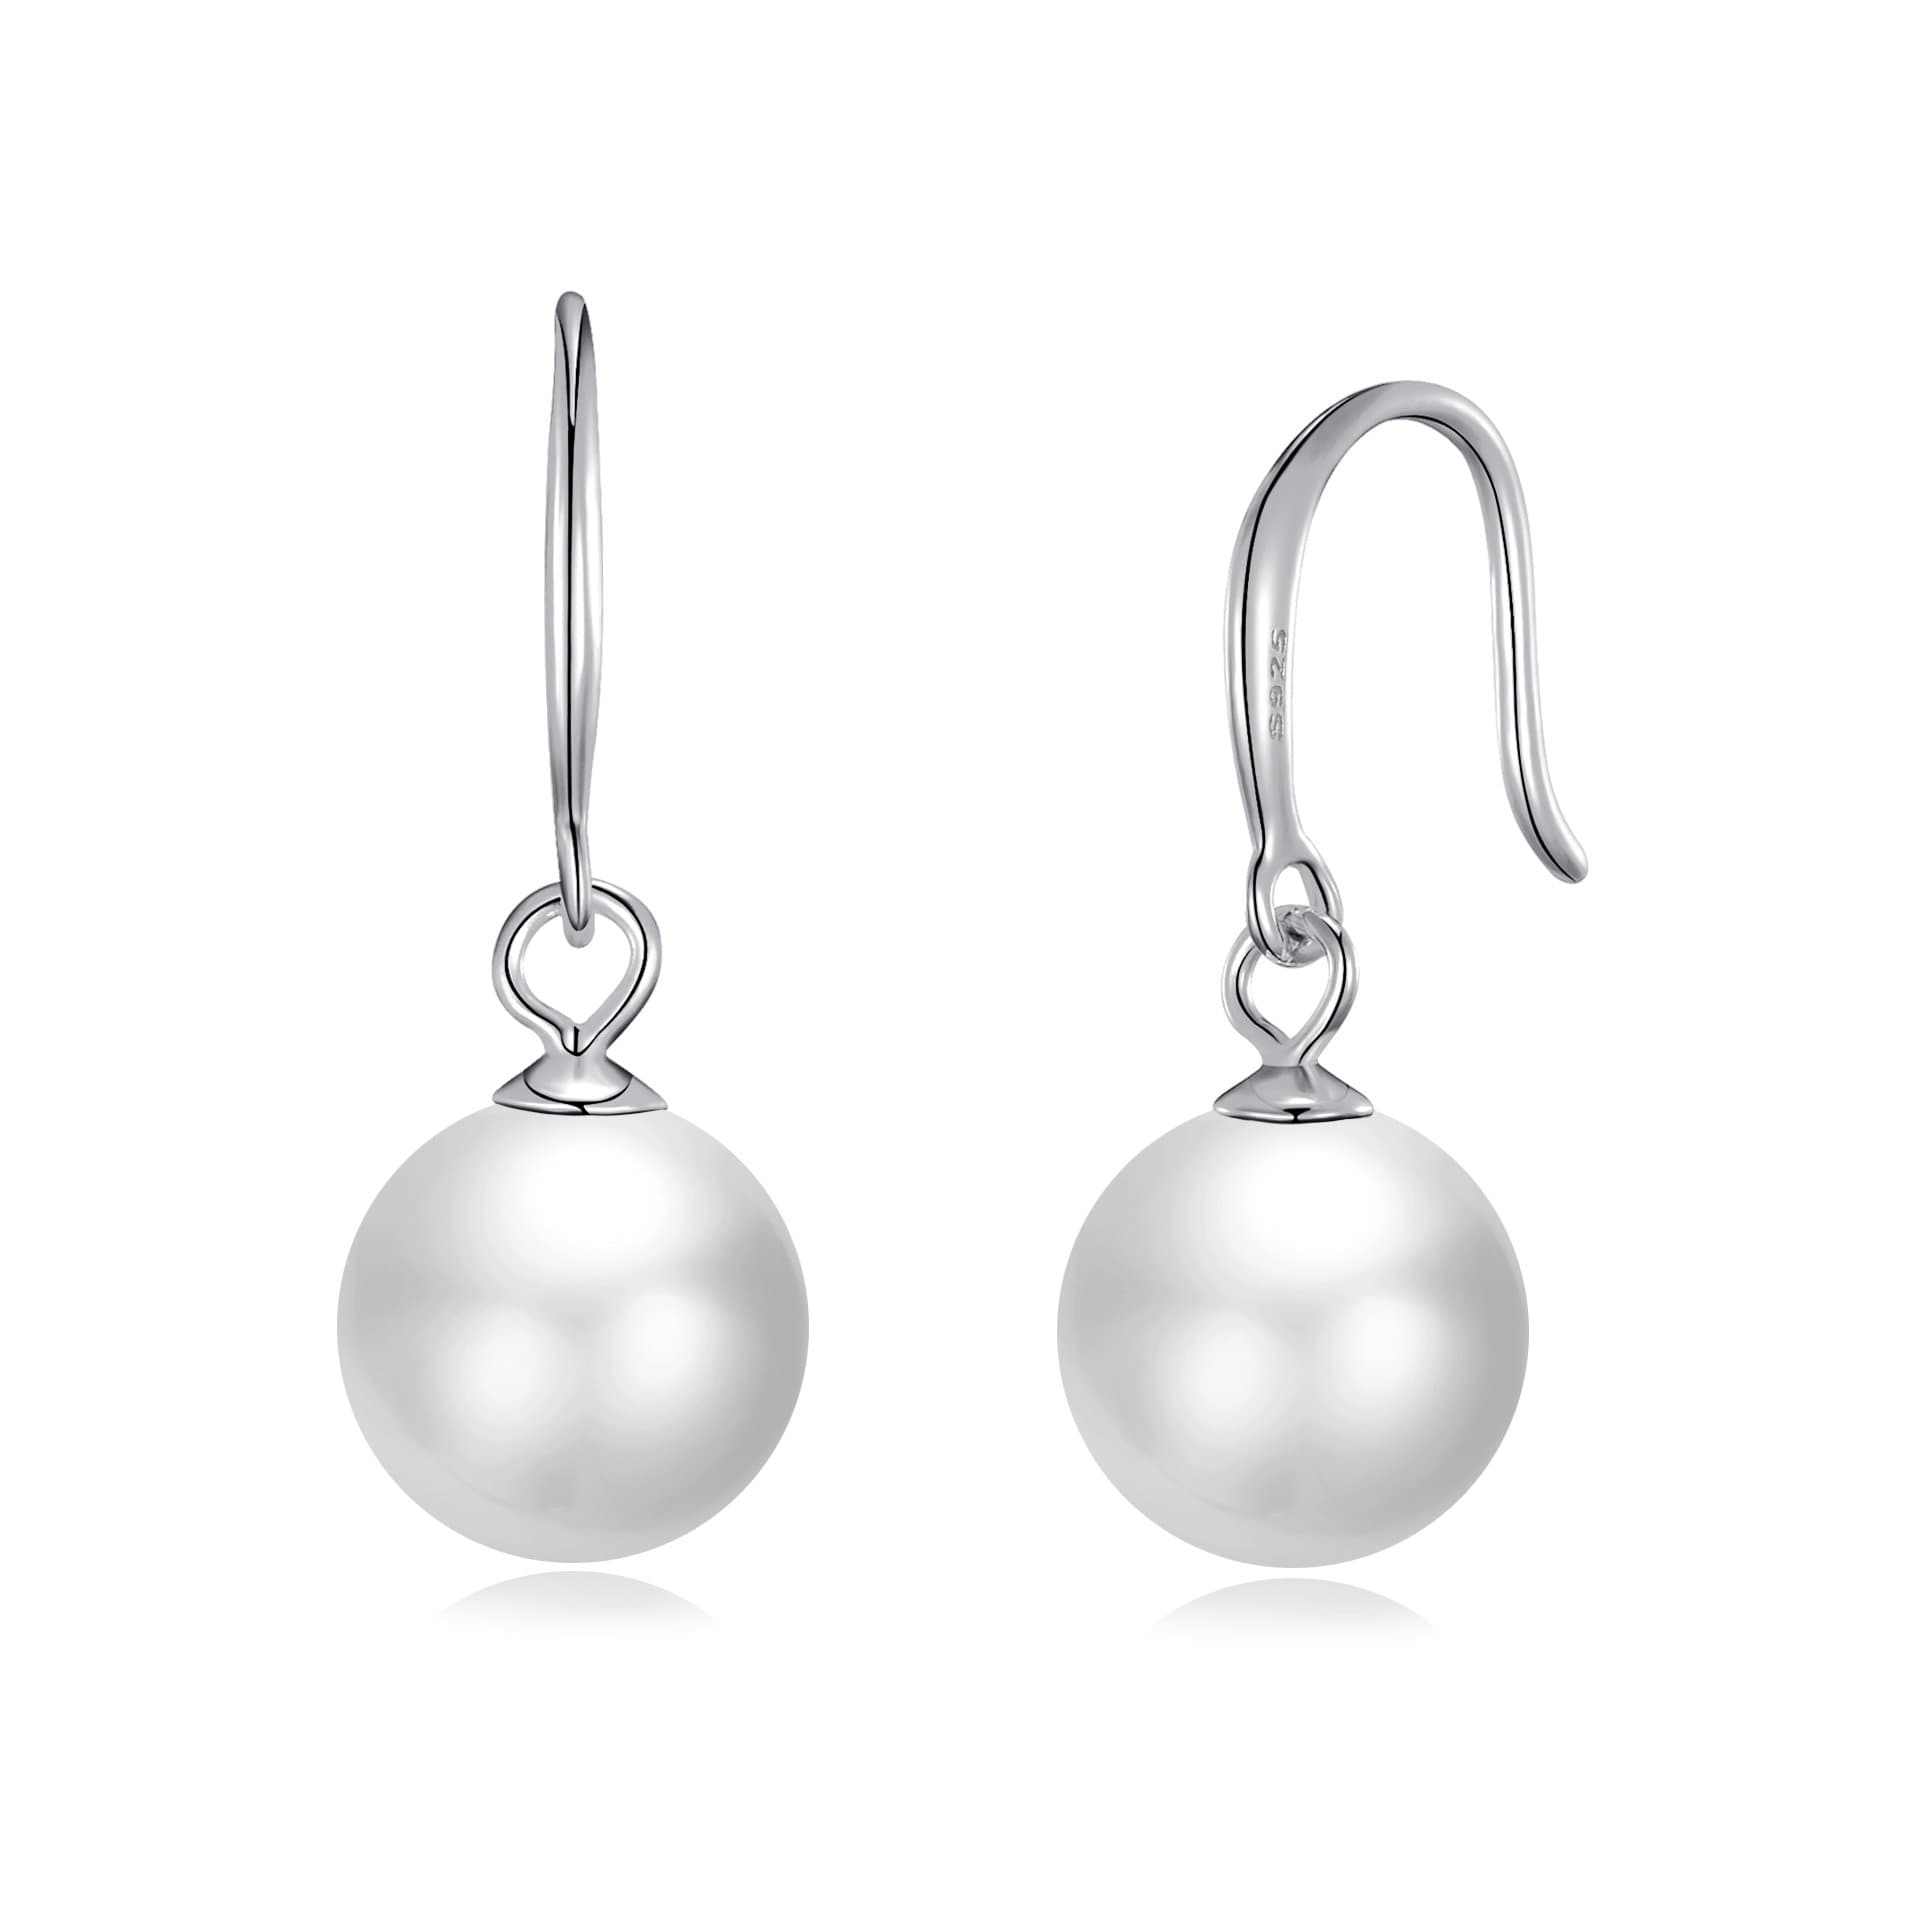 Sterling Silver White Pearl Drop Earrings by Philip Jones Jewellery